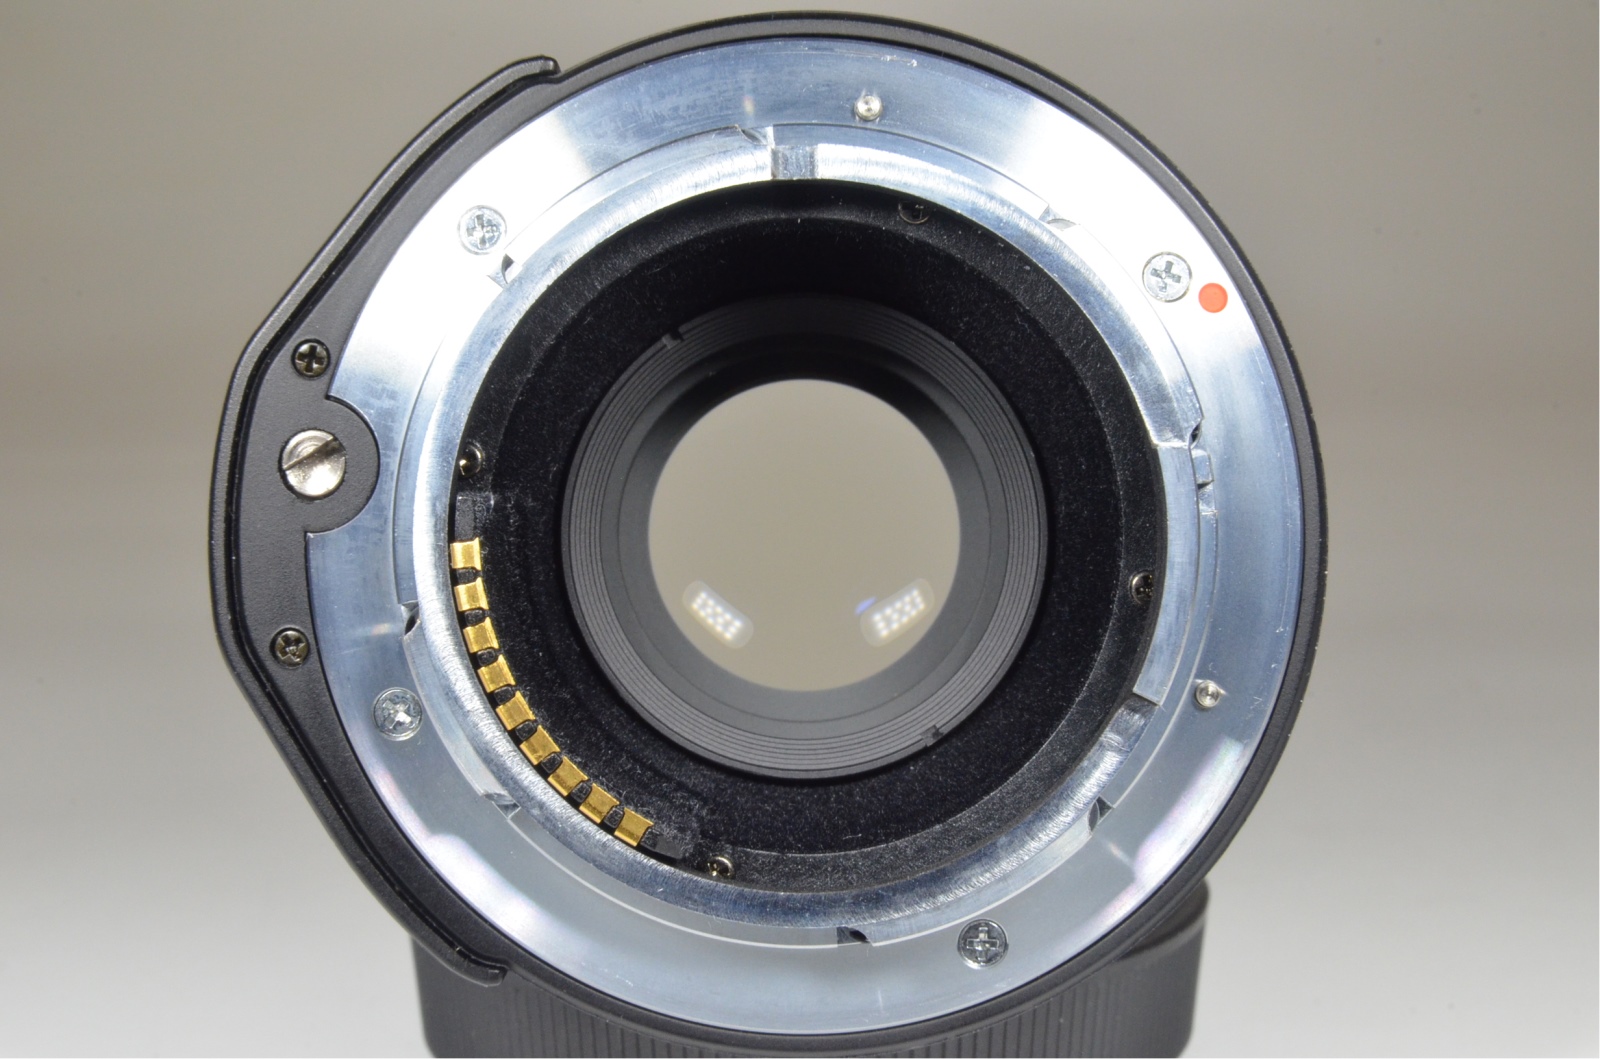 contax g2 w/ planar 45mm, biogon 28mm, sonnar 90mm, tla200, film tested